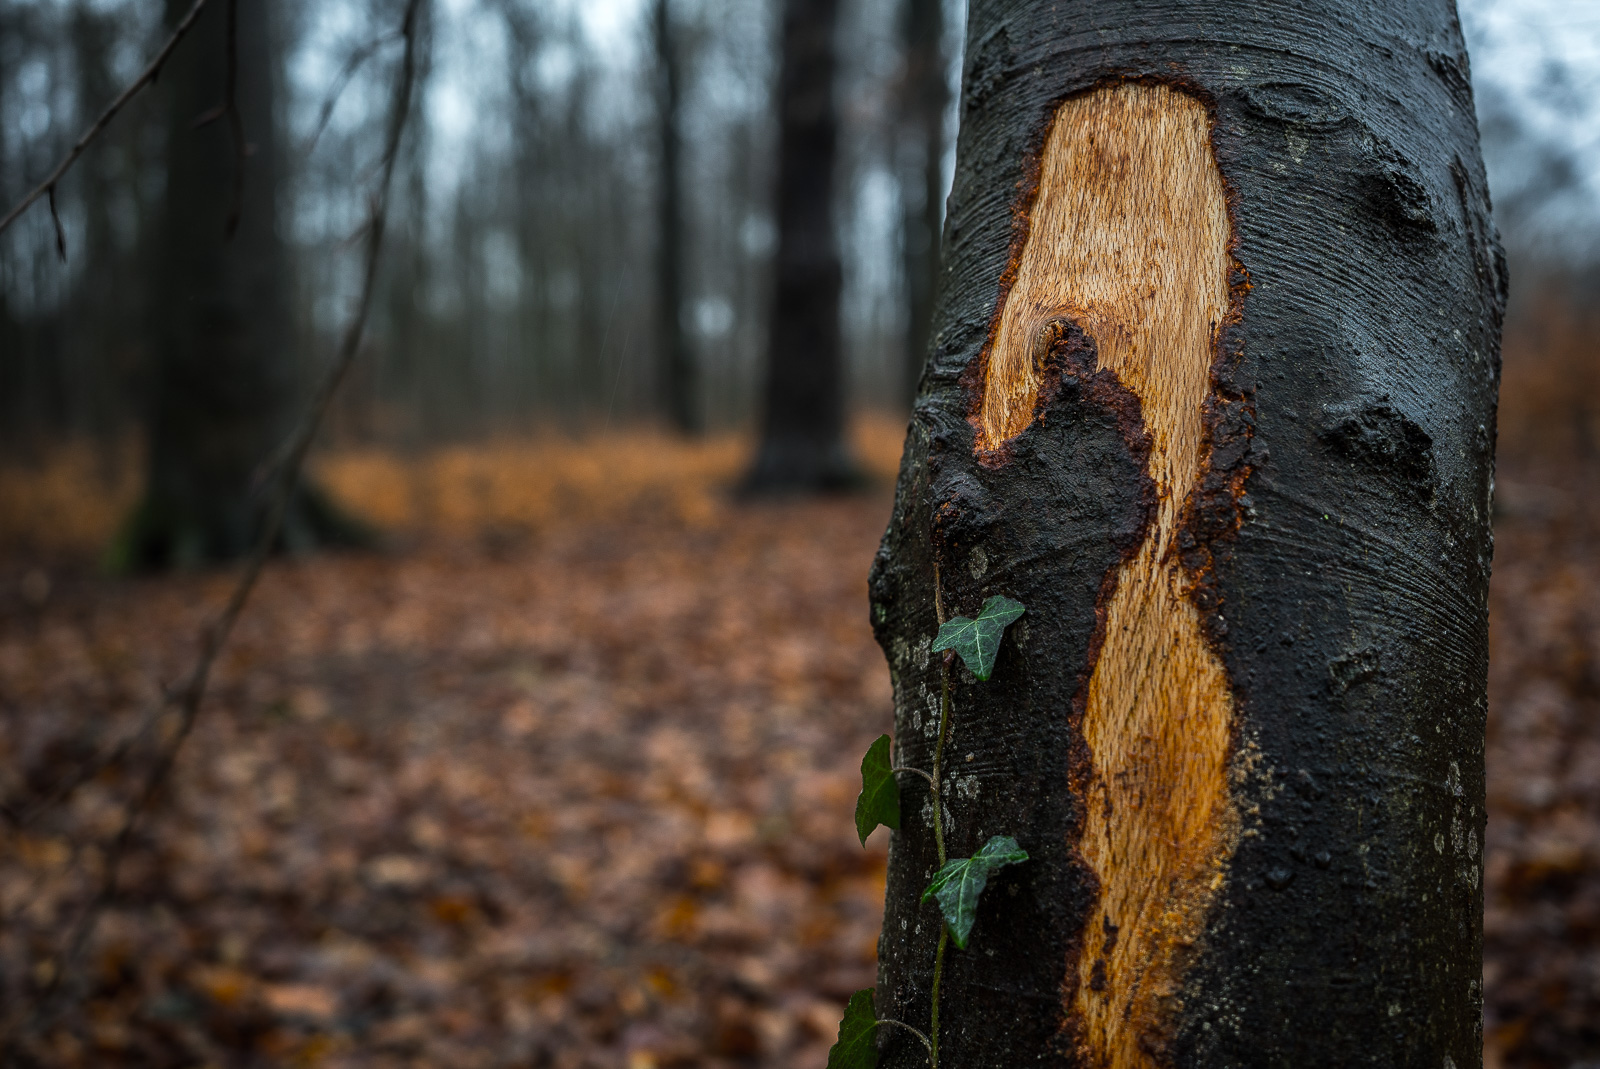 Bei Waldarbeiten beschädigte Rinde eines noch stehenden Baums, Efeuranke